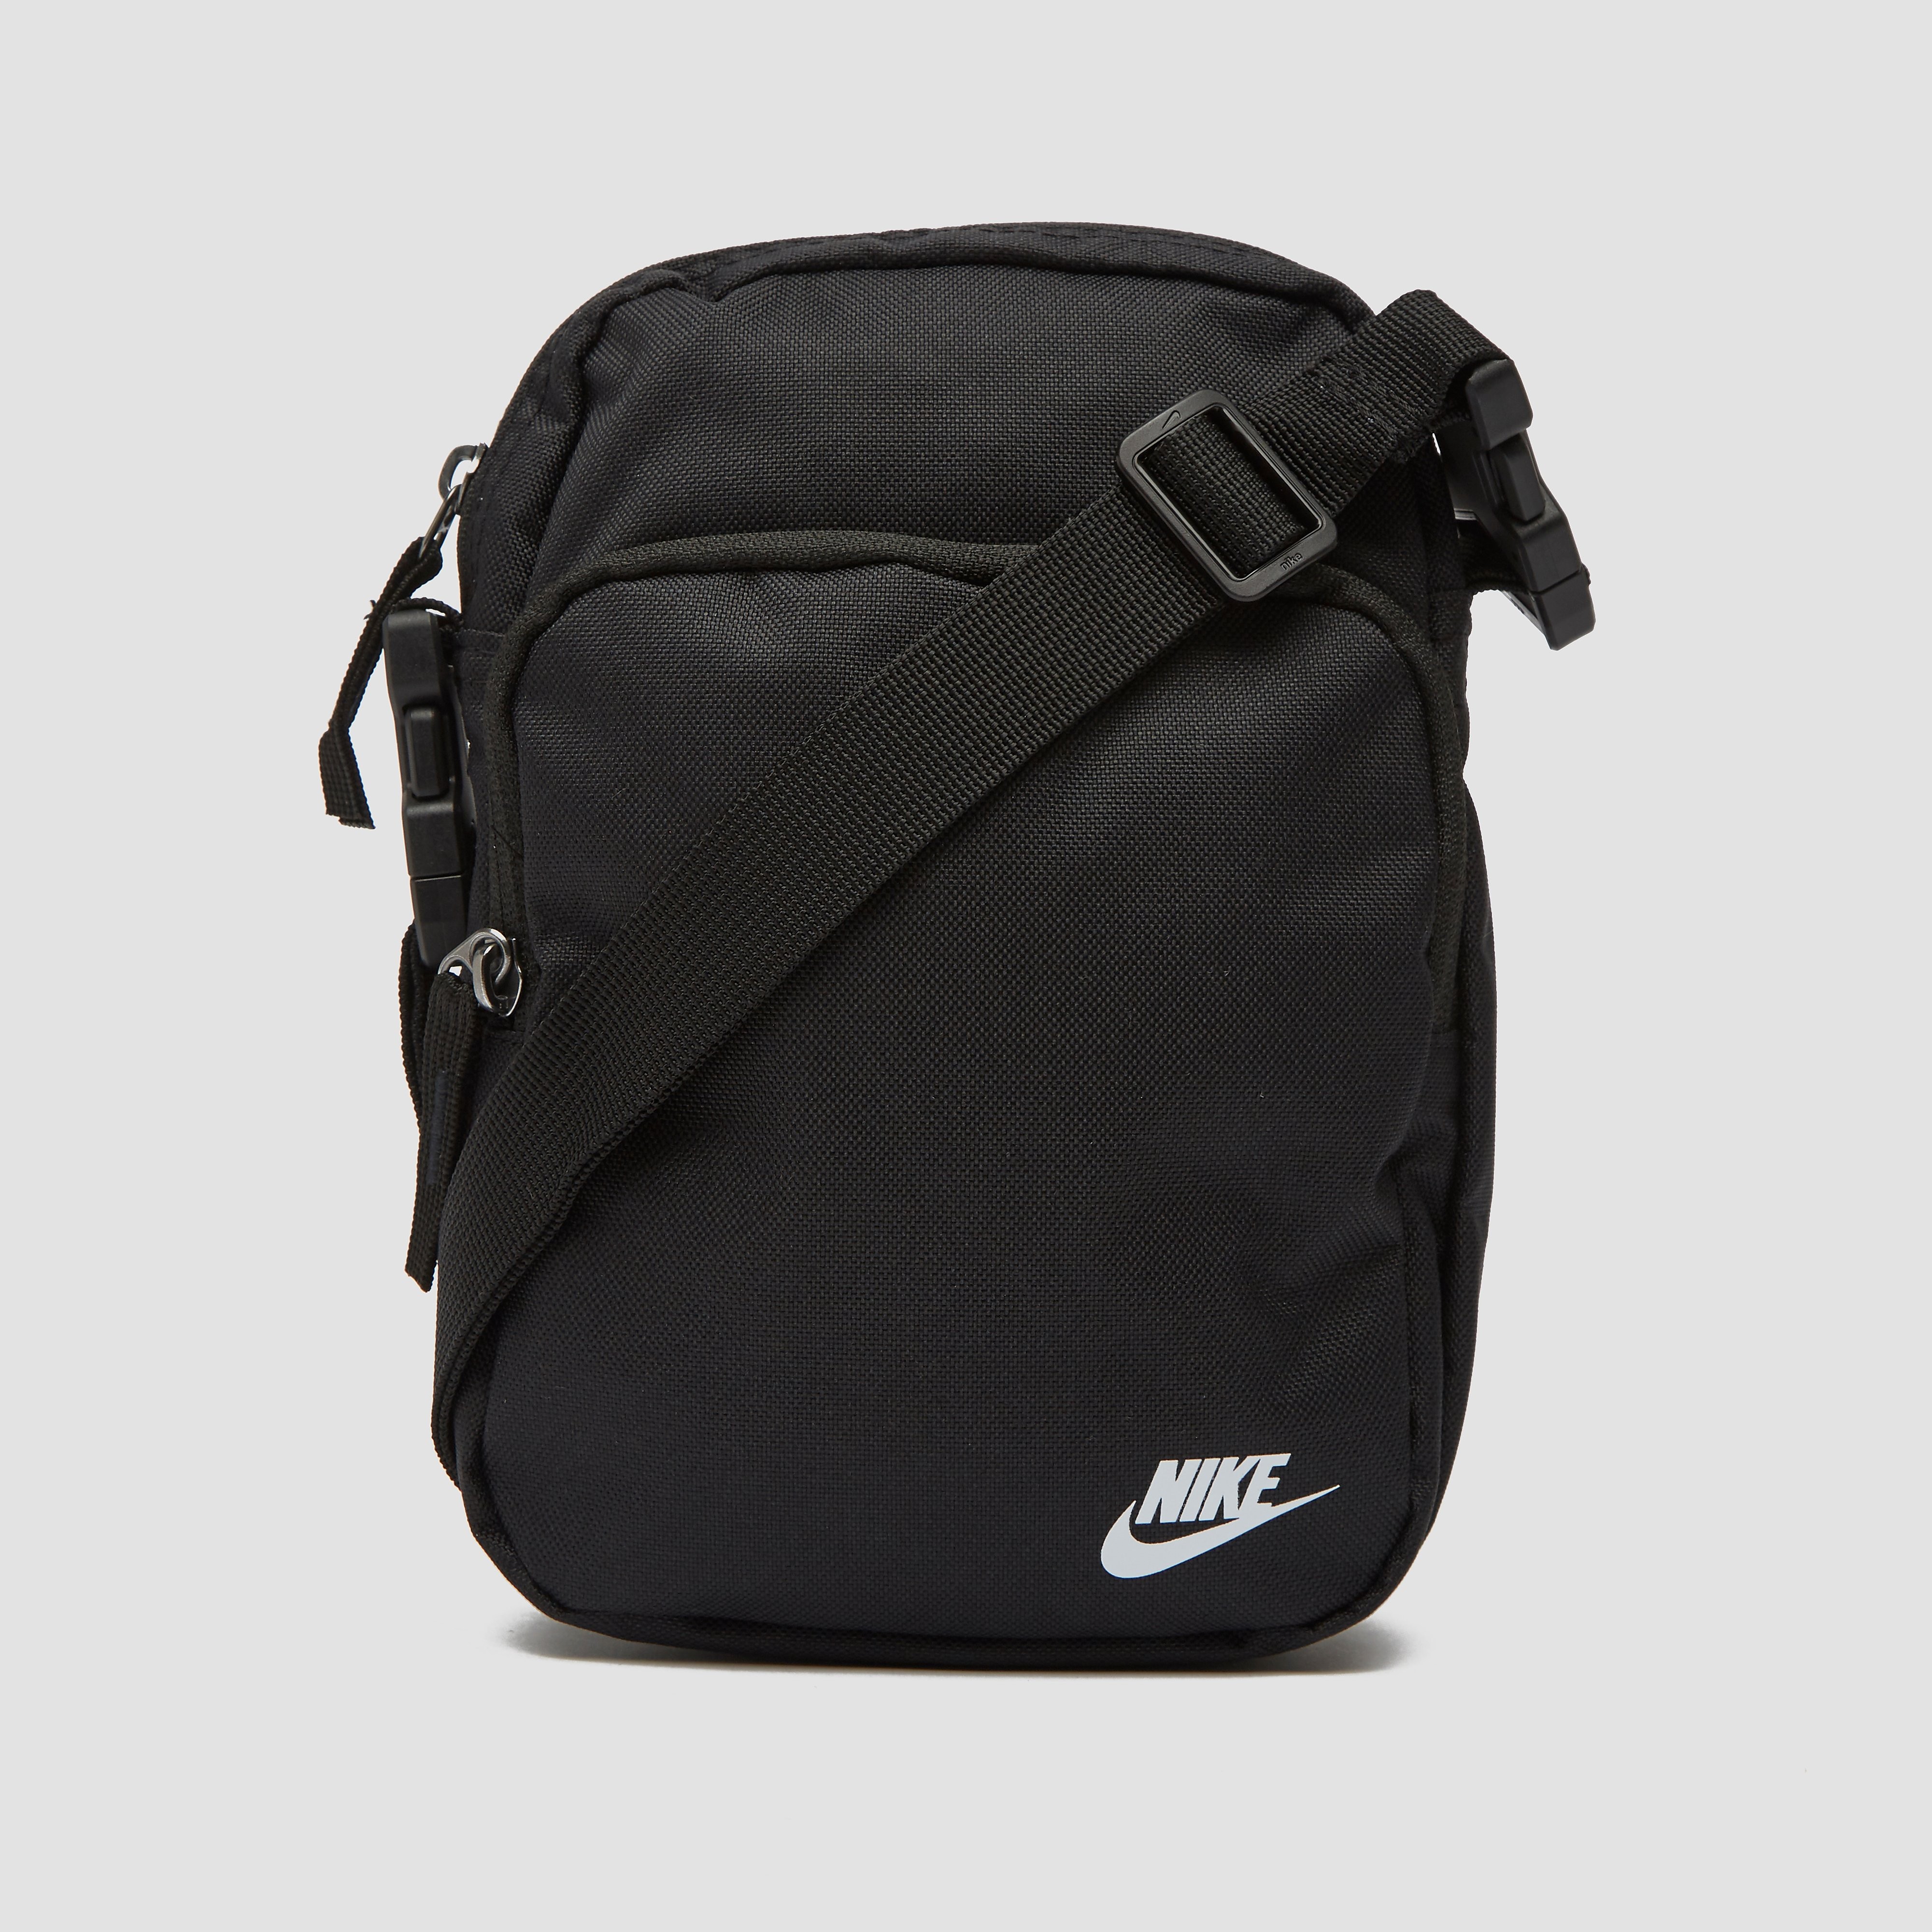 Nike Heritage 2.0 Tas - Maat One size  - UnisexKinderen en volwassenen - zwart/wit